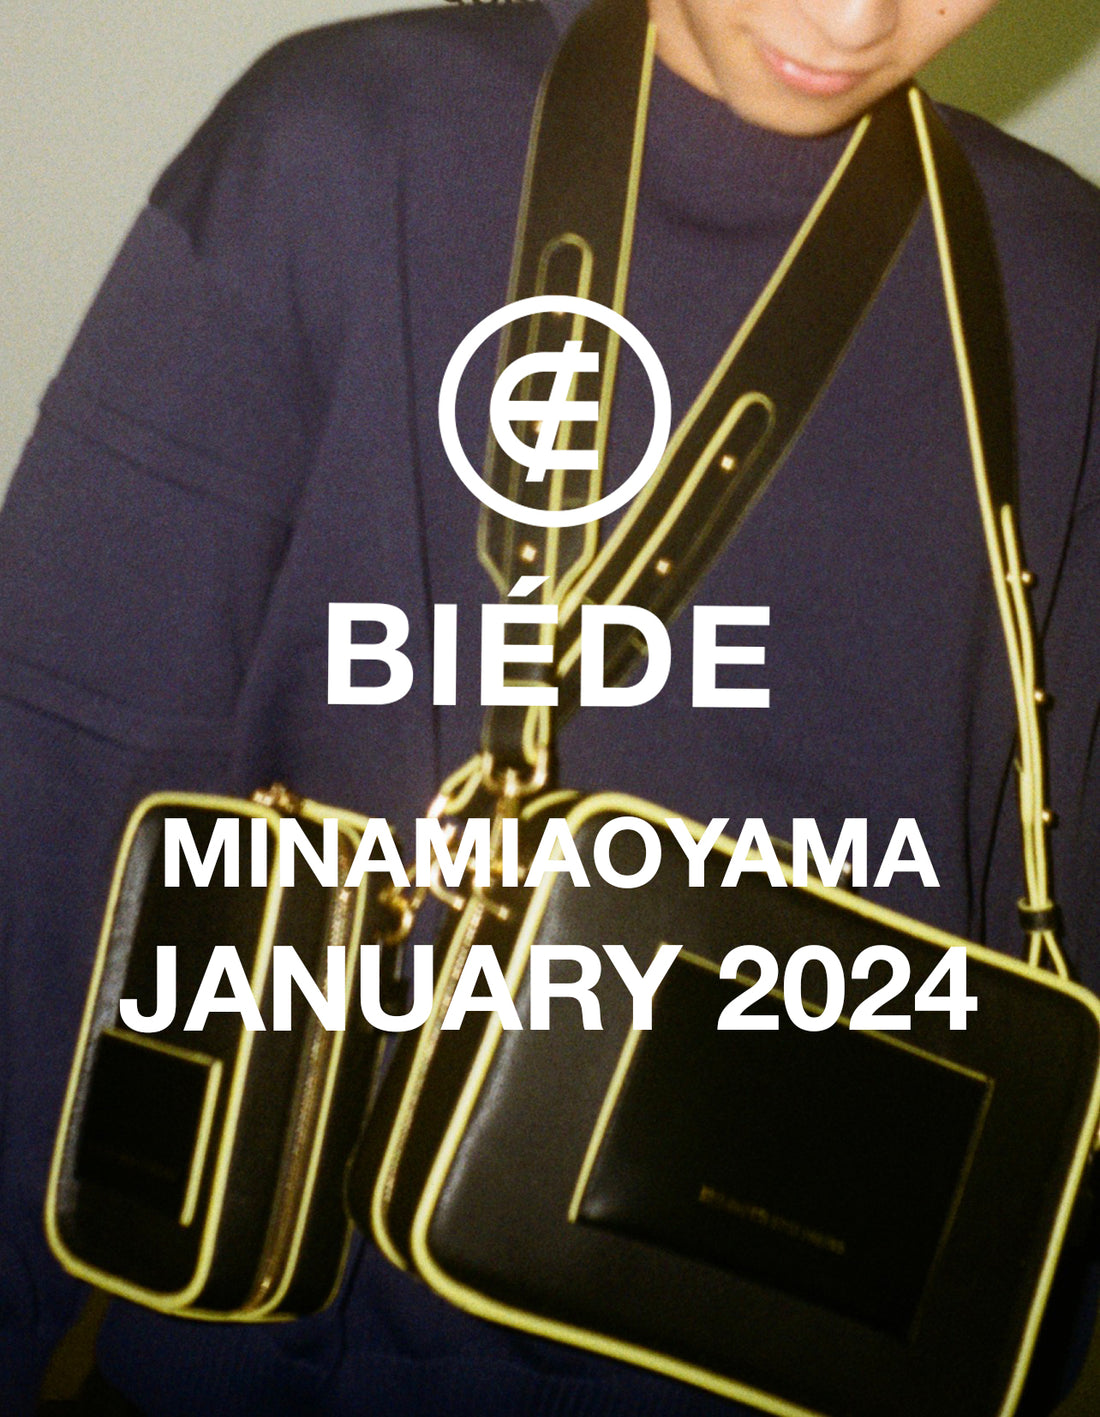 BIÉDE MINAMIAOYAMA JANUARY 2024 SCHEDULE